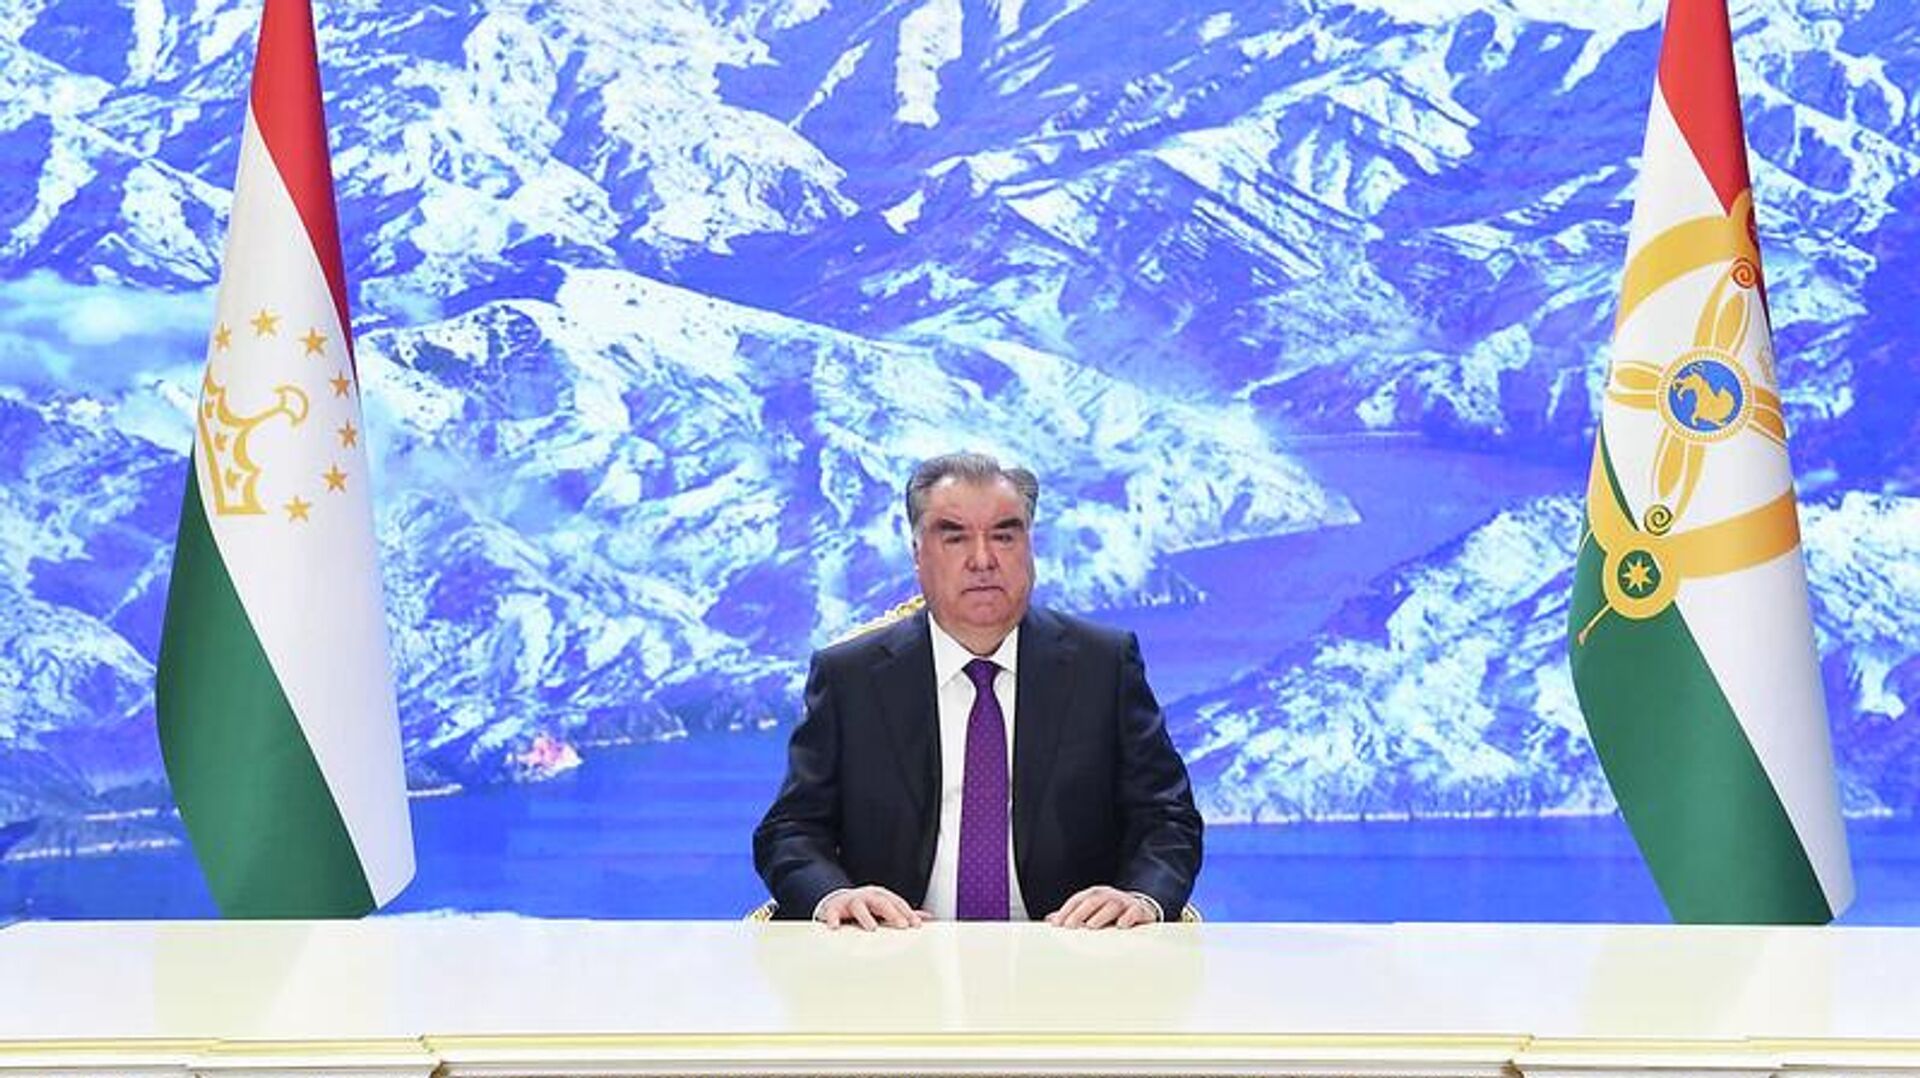 Президент Таджикистана Эмомали Рахмон выступил на церемонии открытия четвертого Азиатско-Тихоокеанского водного саммита - Sputnik Таджикистан, 1920, 23.04.2022